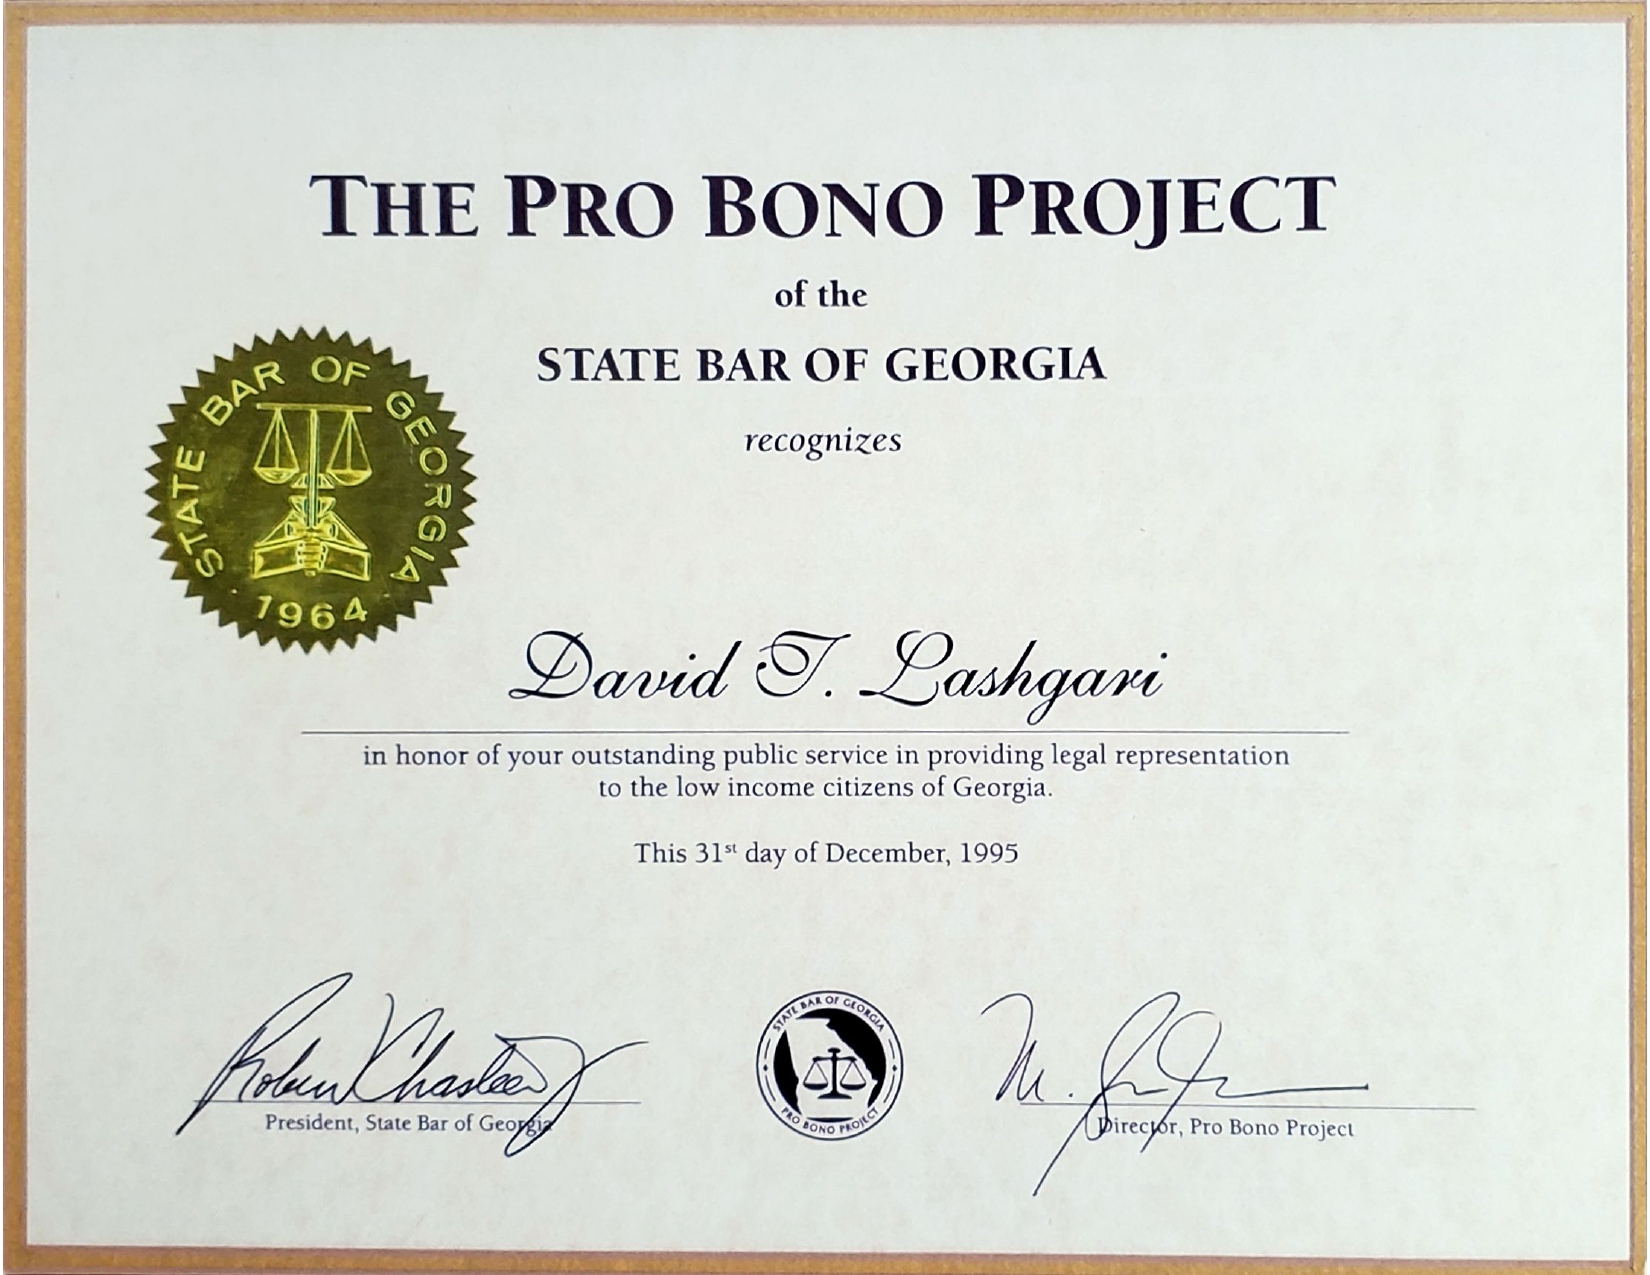 Pro Bono Project recognizes your public service in providing legal representation to the low income citizens of Georgia